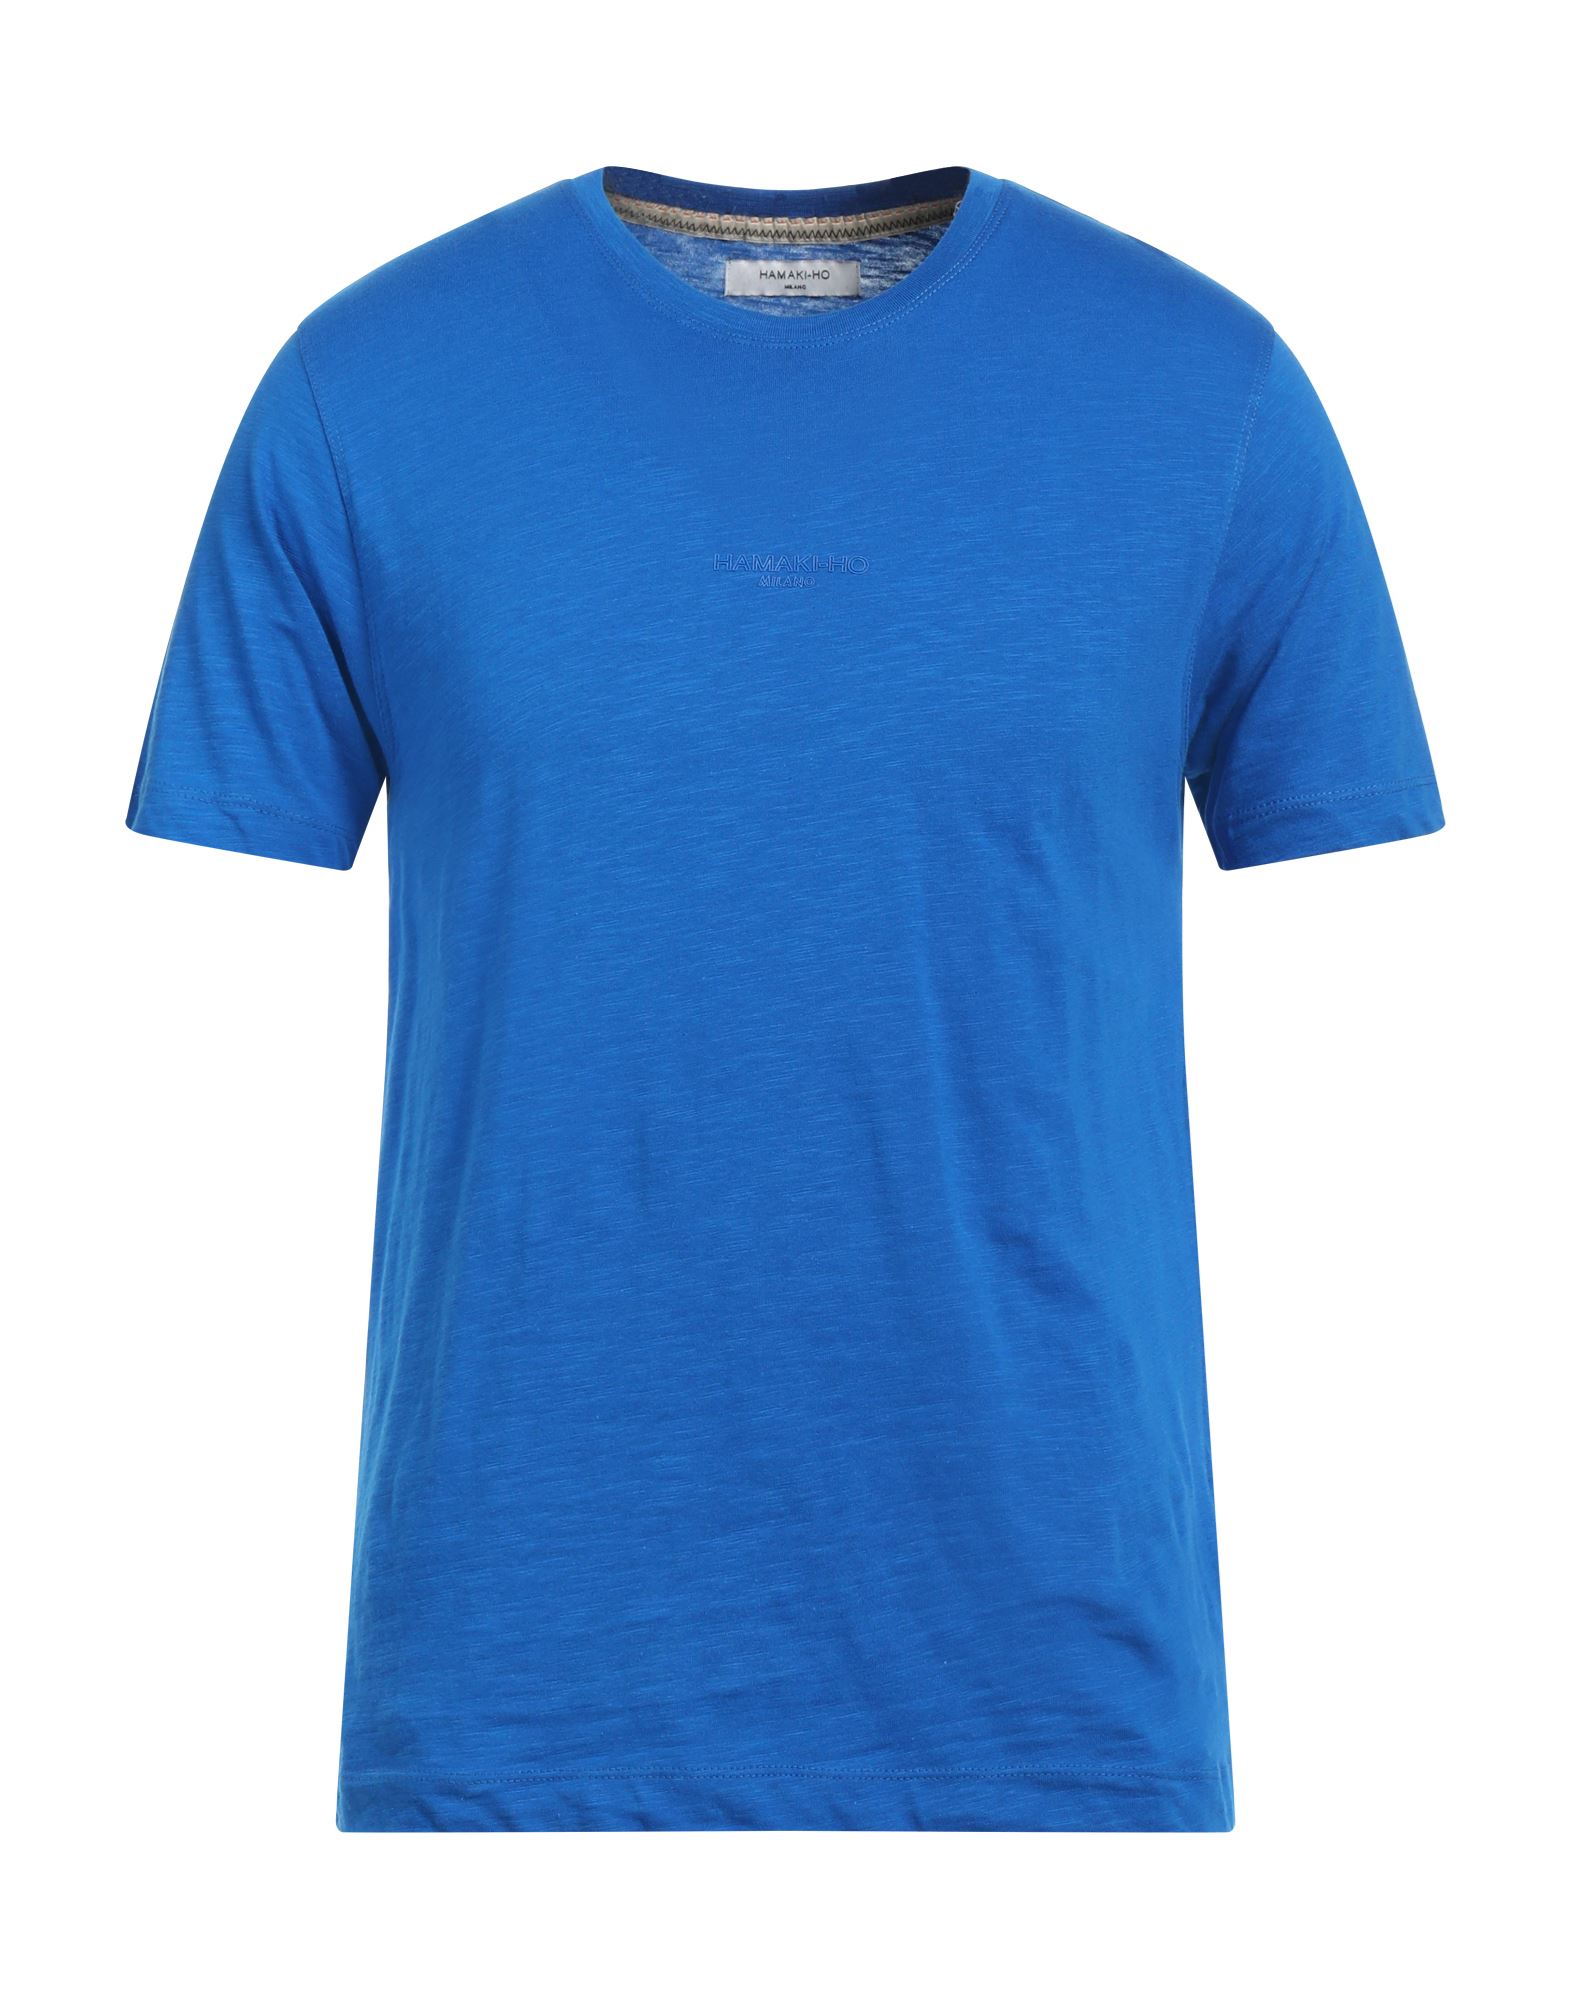 Hamaki-ho T-shirts In Blue